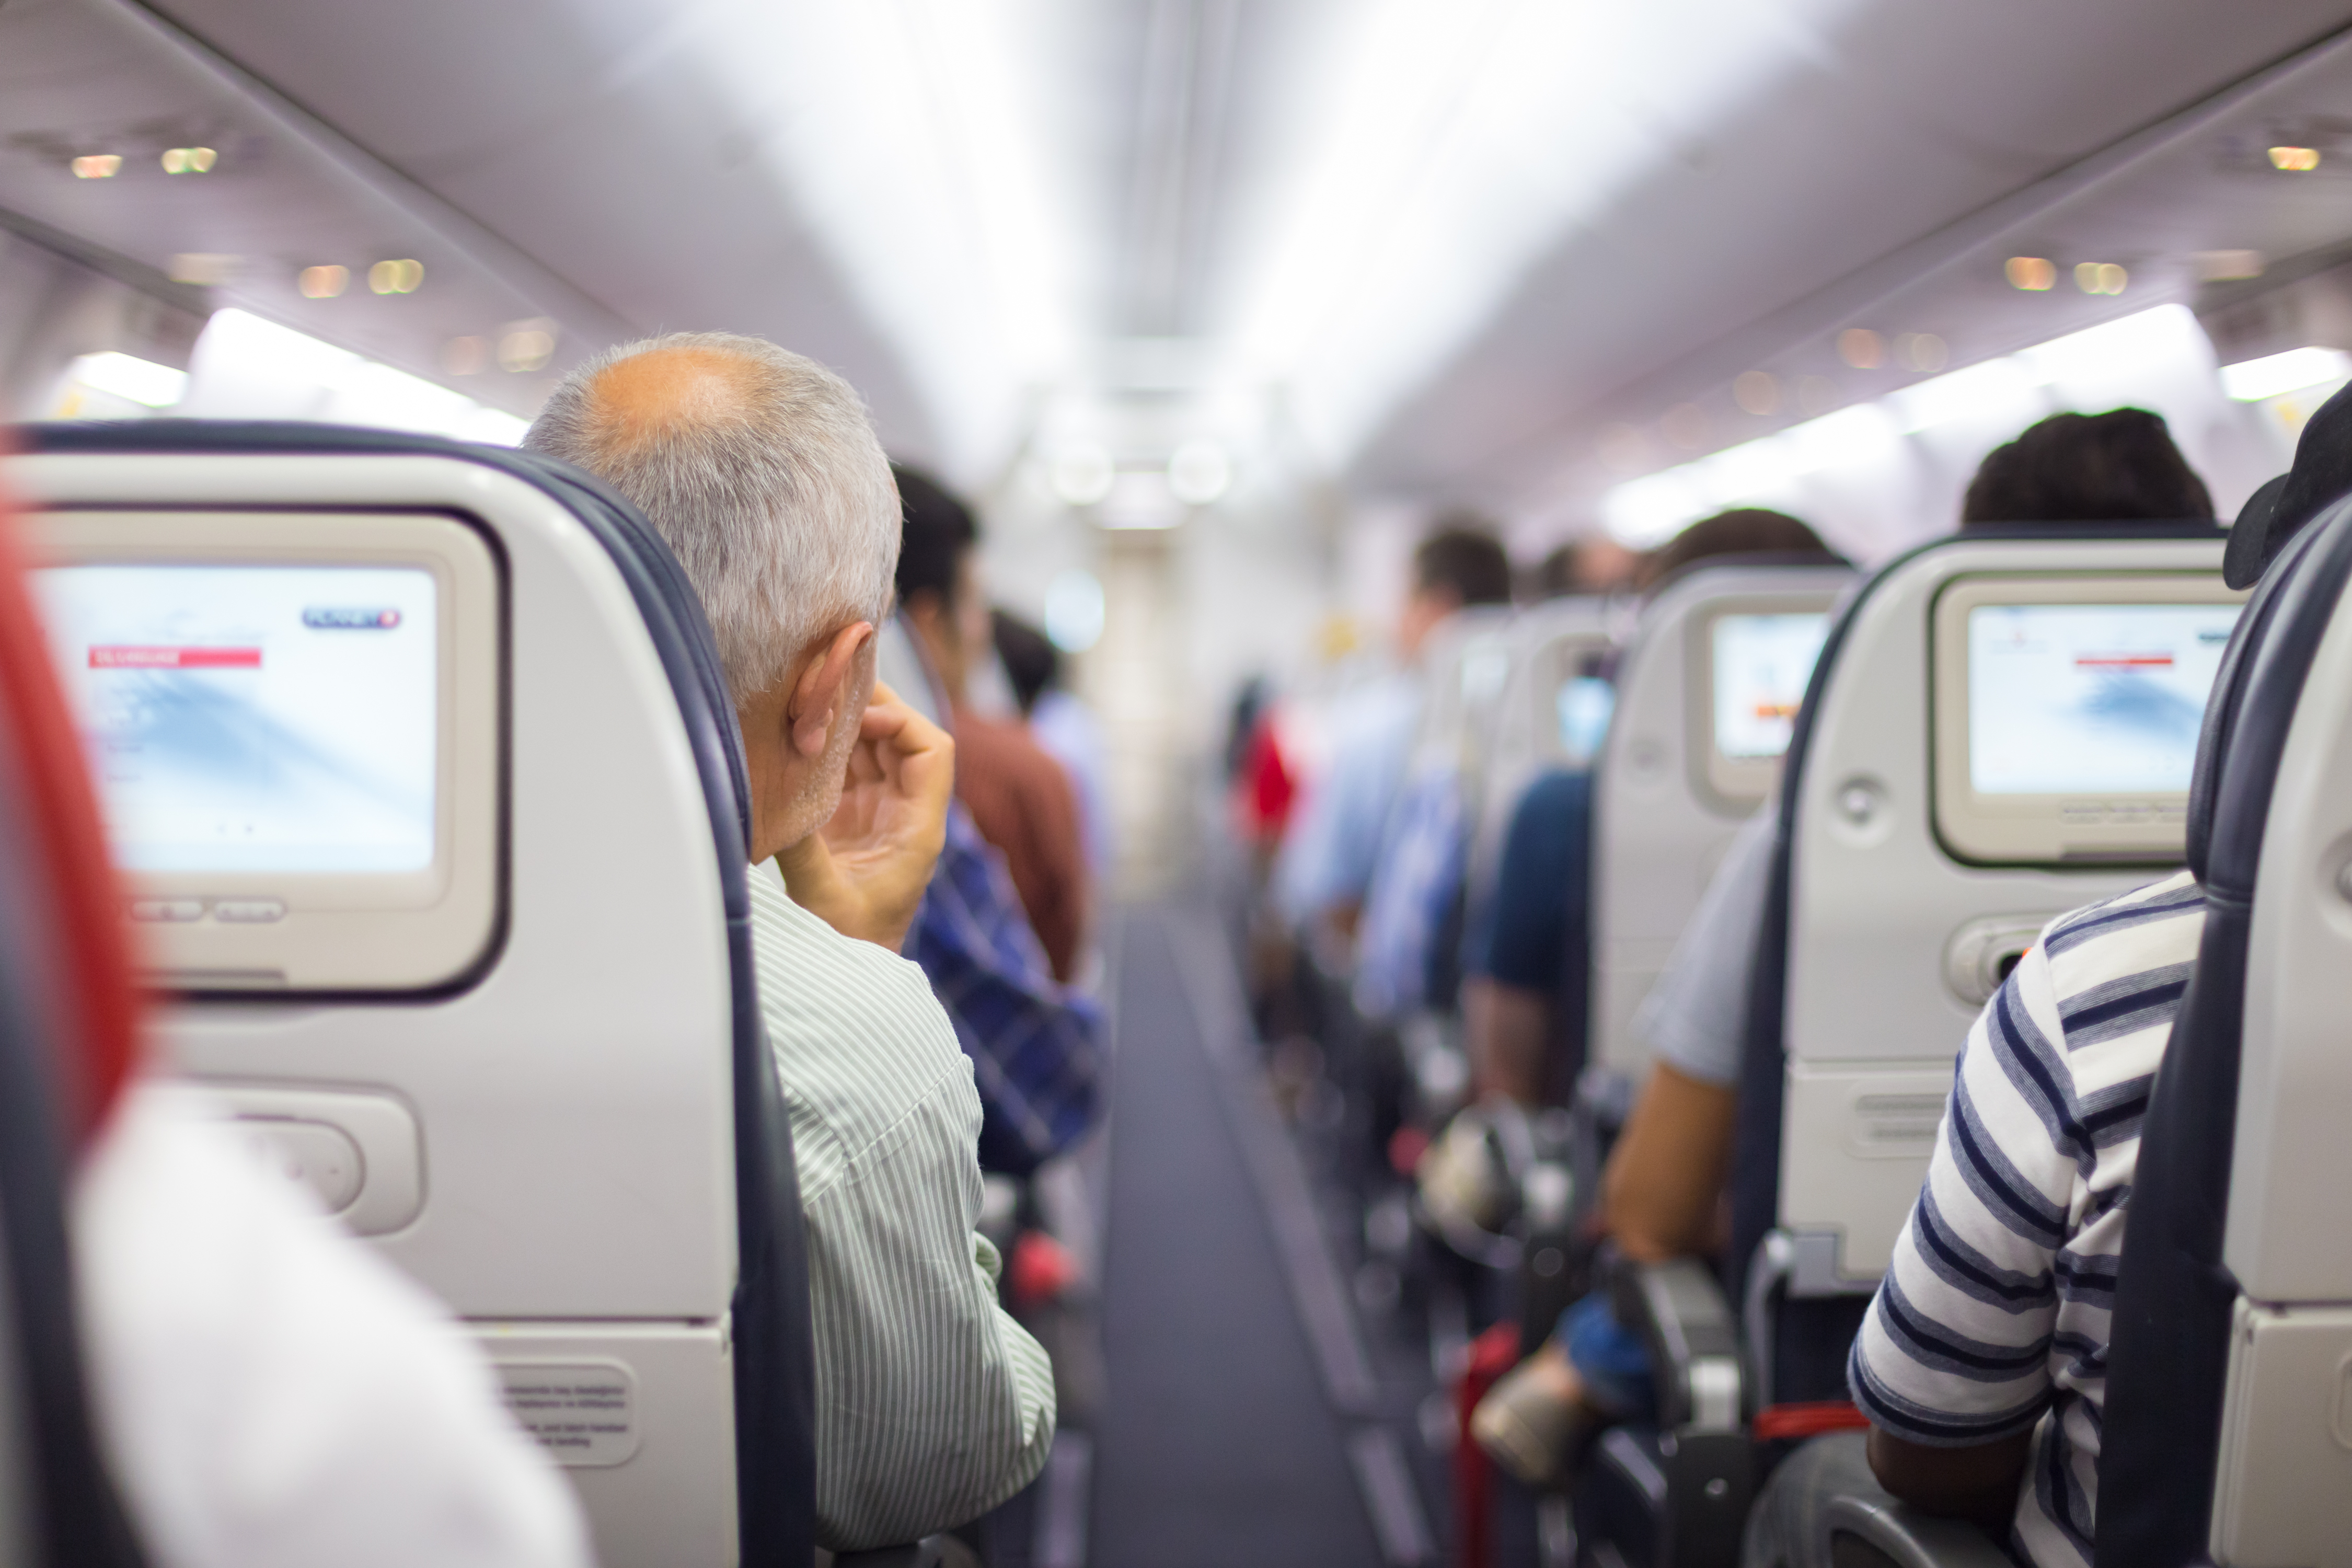 Interior de un avión con pasajeros en sus asientos esperando para despegar. | Fuente: Shutterstock